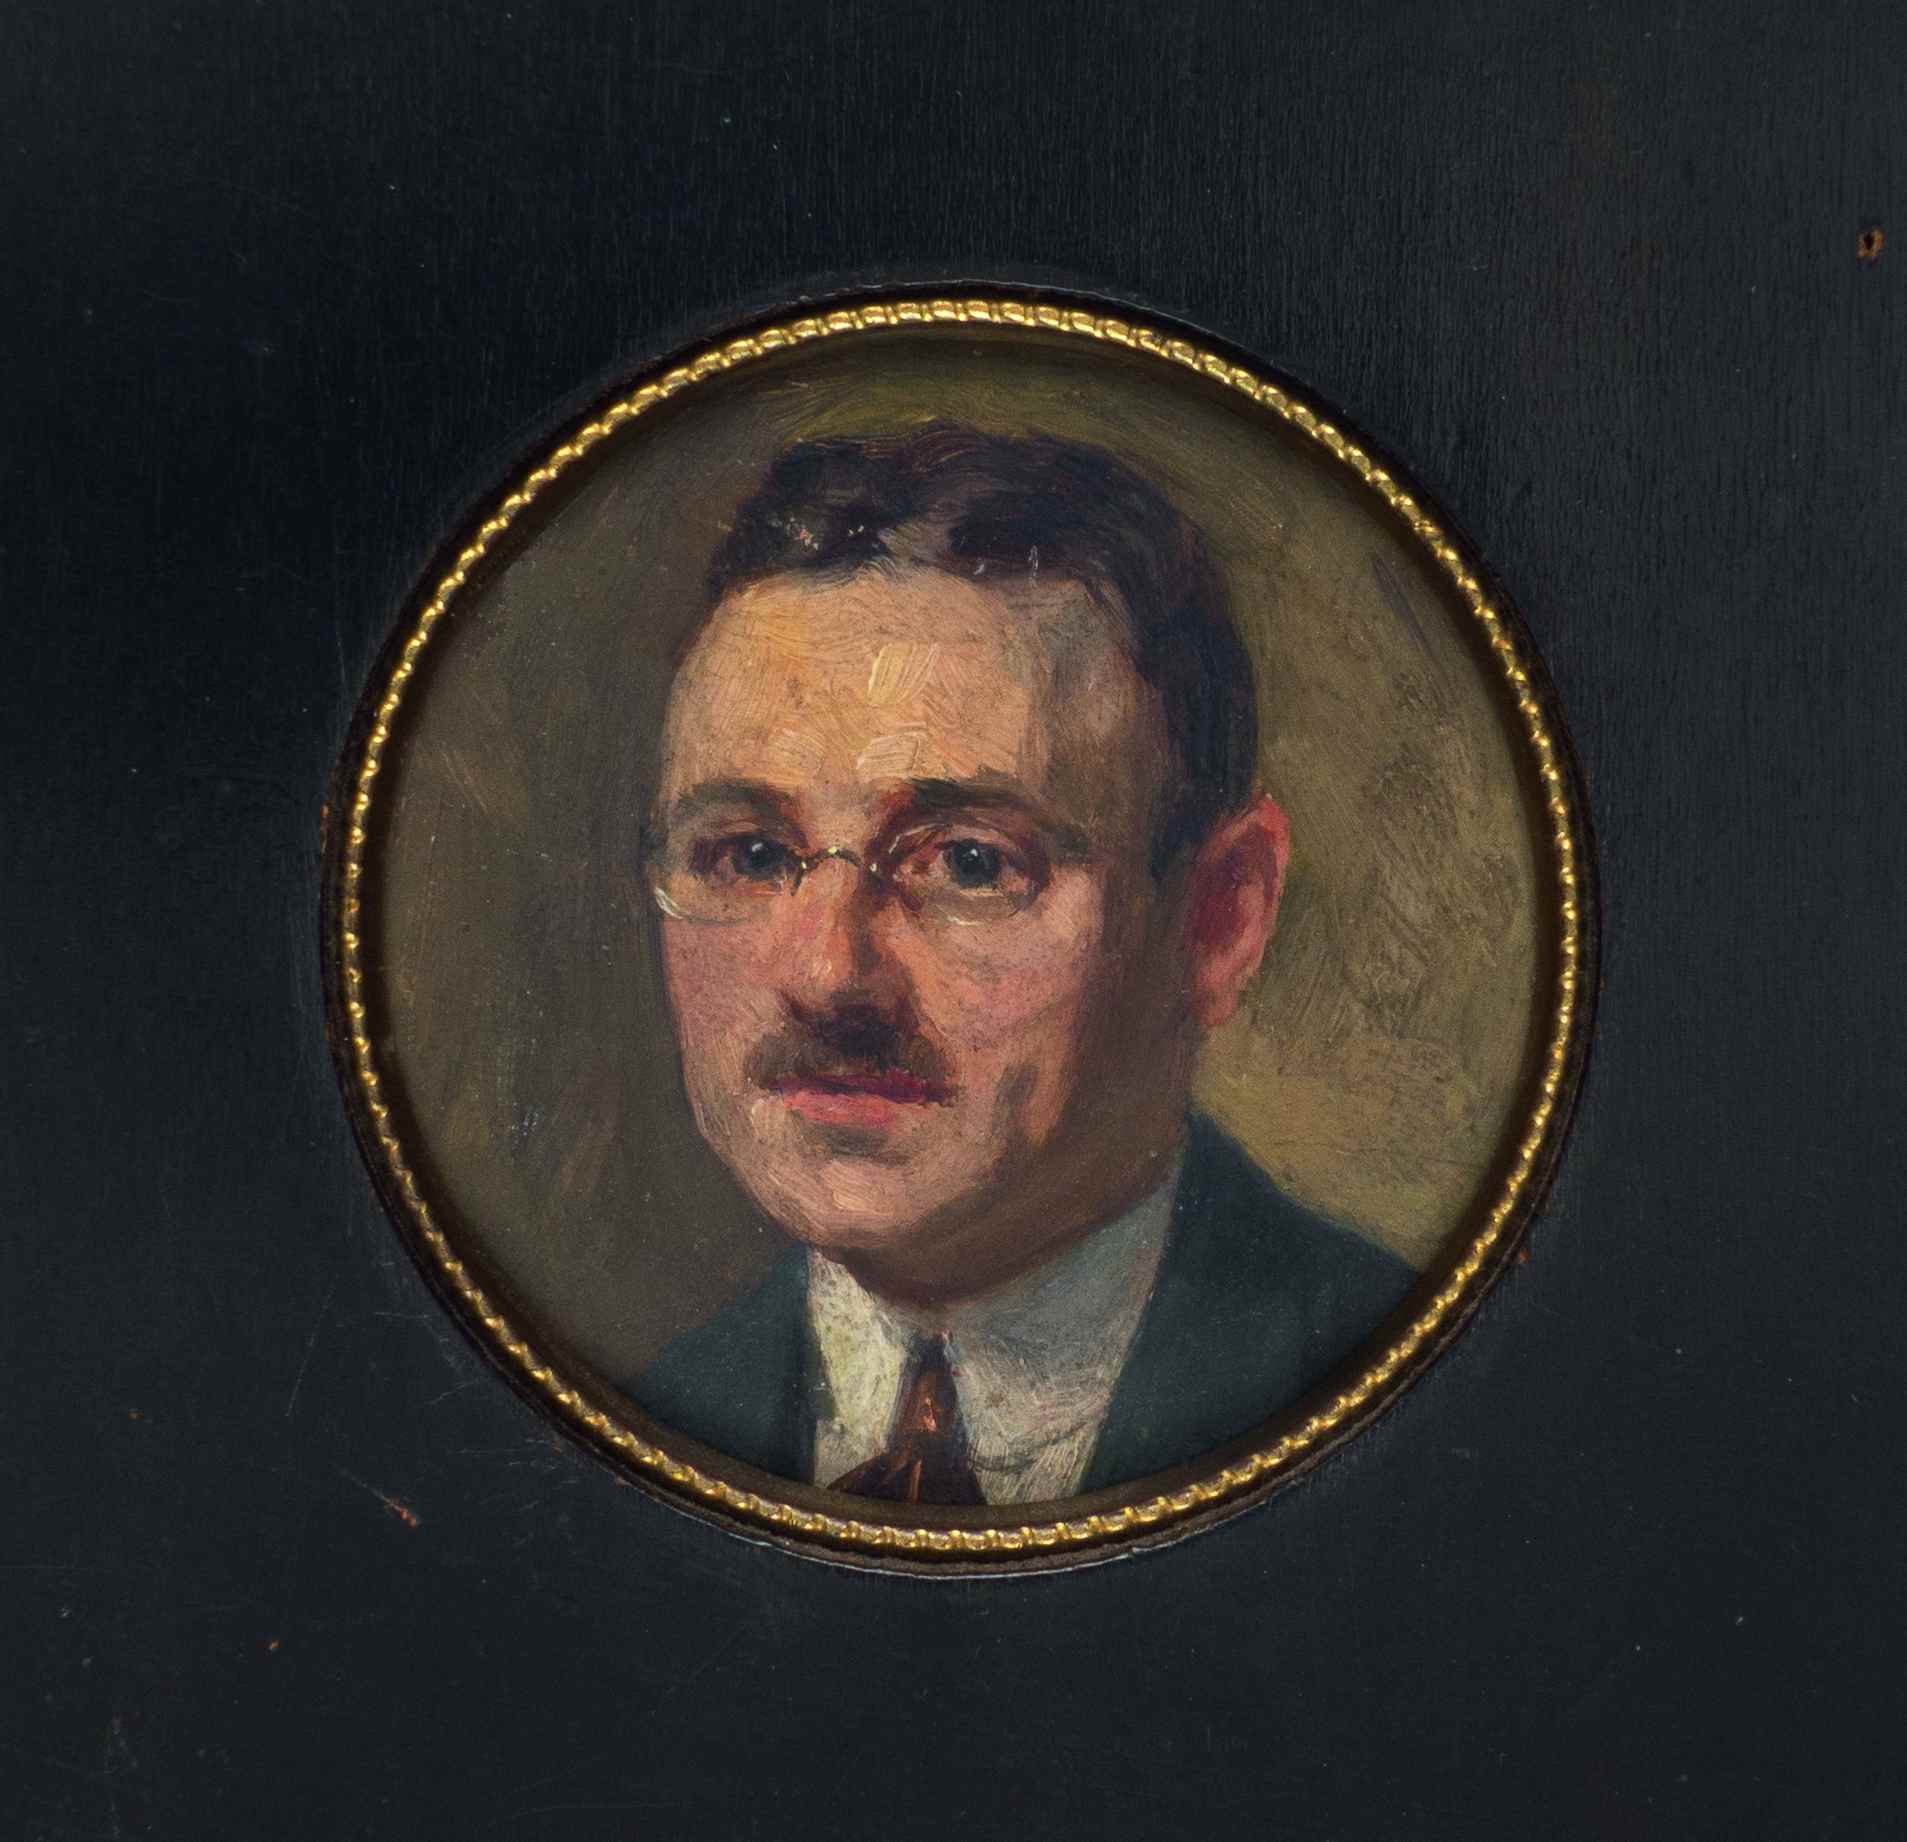 Eresaluut voor een vader portretje mathe1911